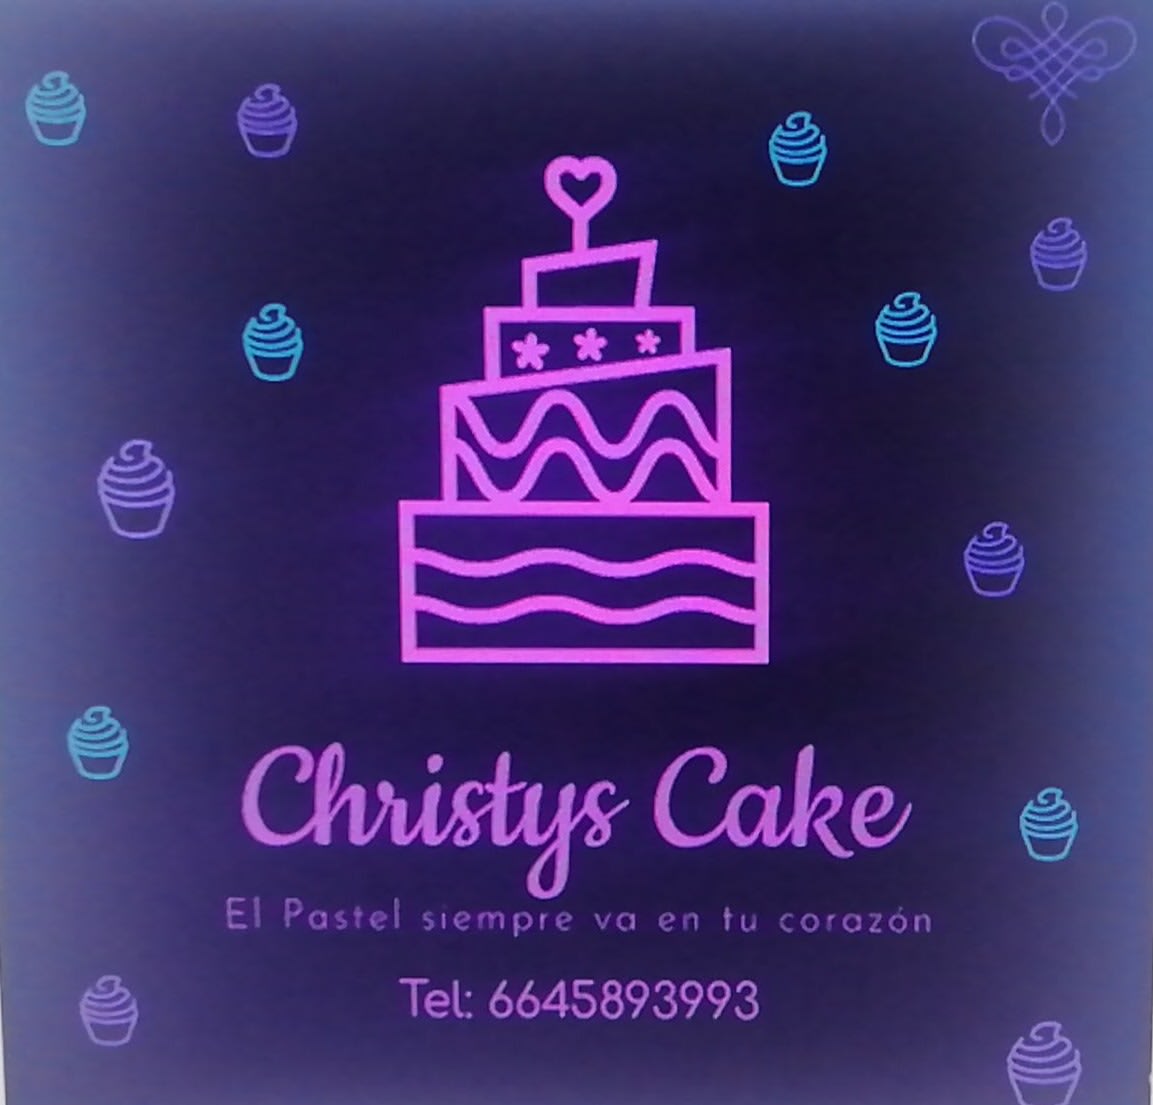 Christy's Cake